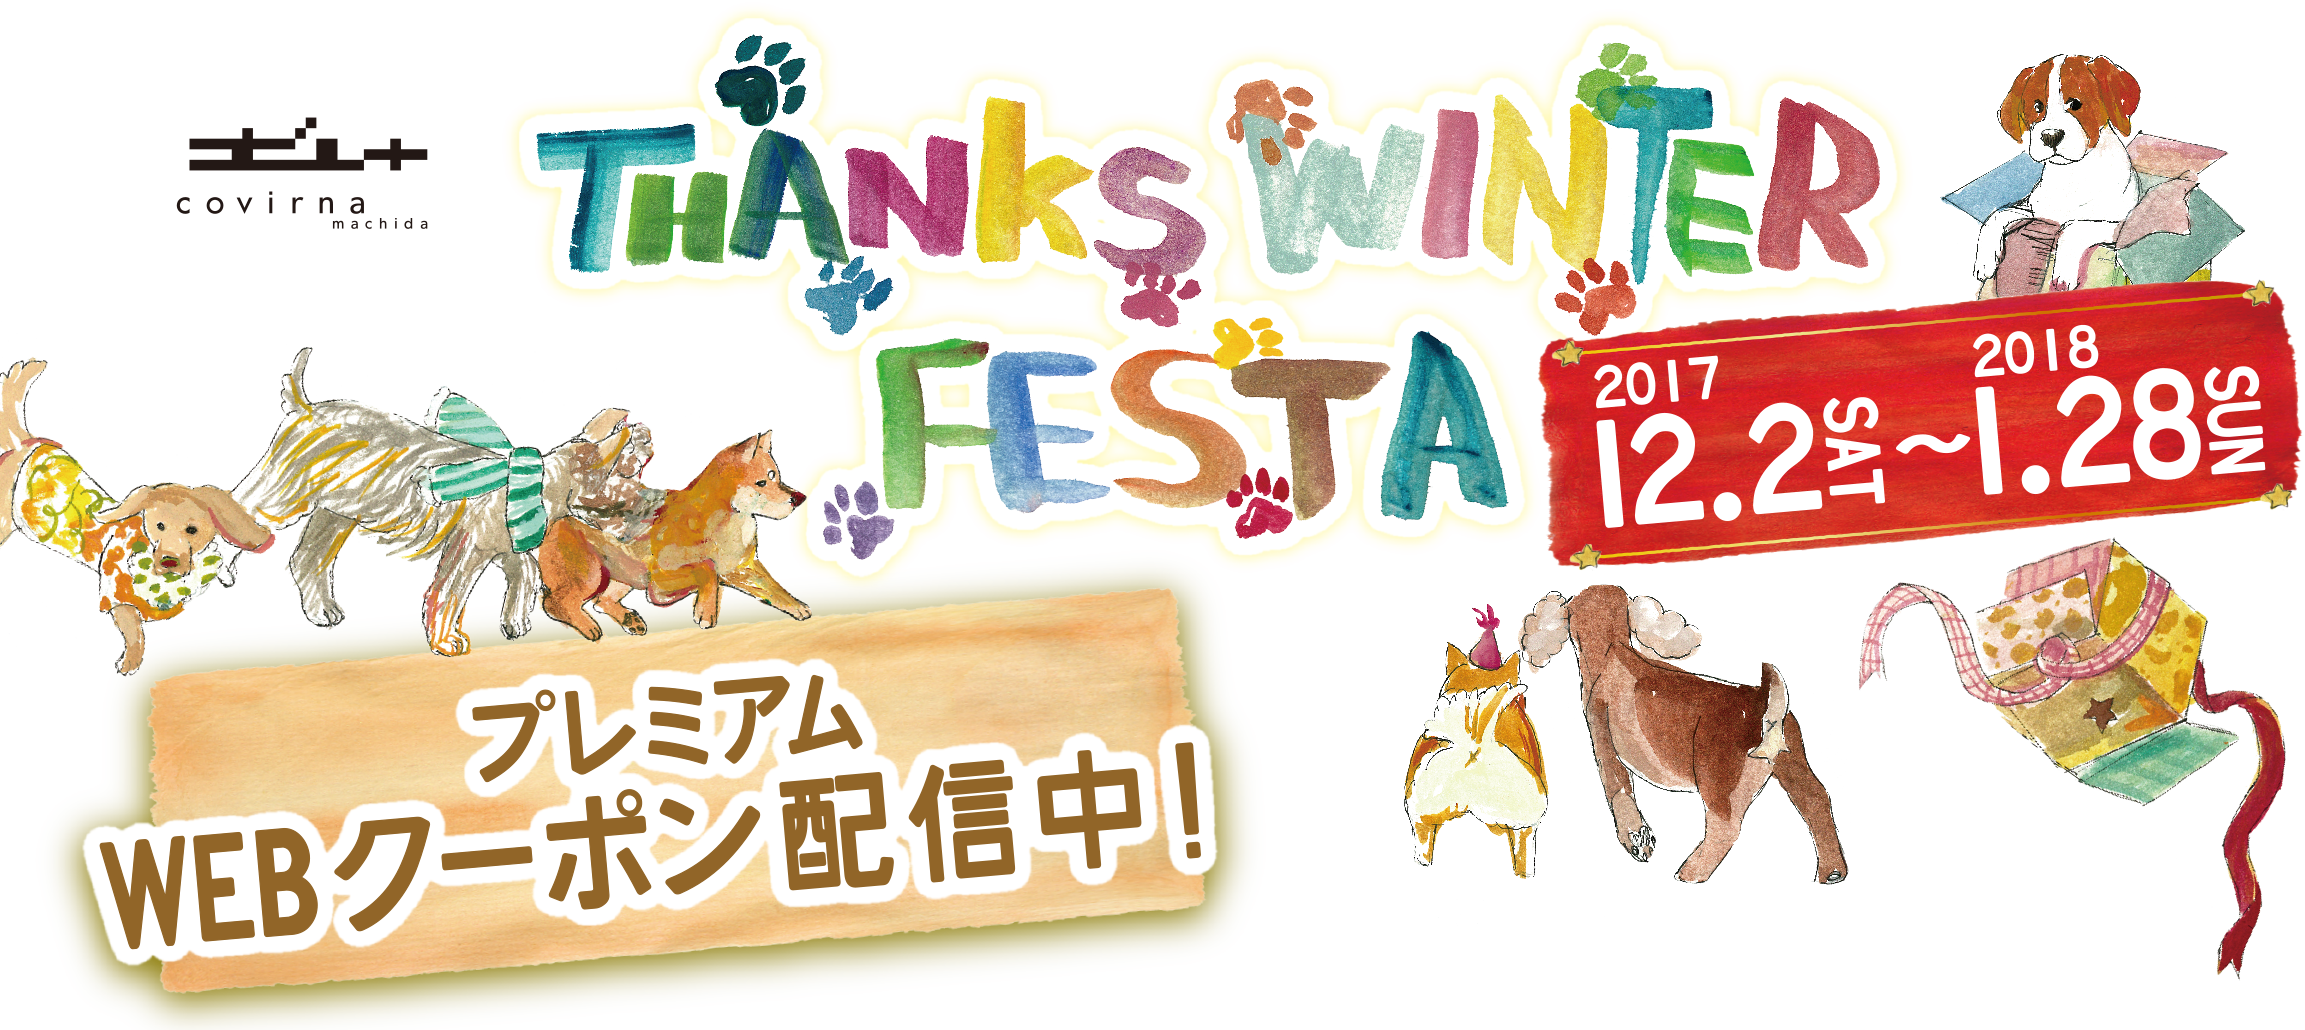 covlrna machida THANKS WINTER FESTA FESTA 2017 12/2(SAT)-12/25(MON) プレミアムWEBクーポン Thanksスクラッチ